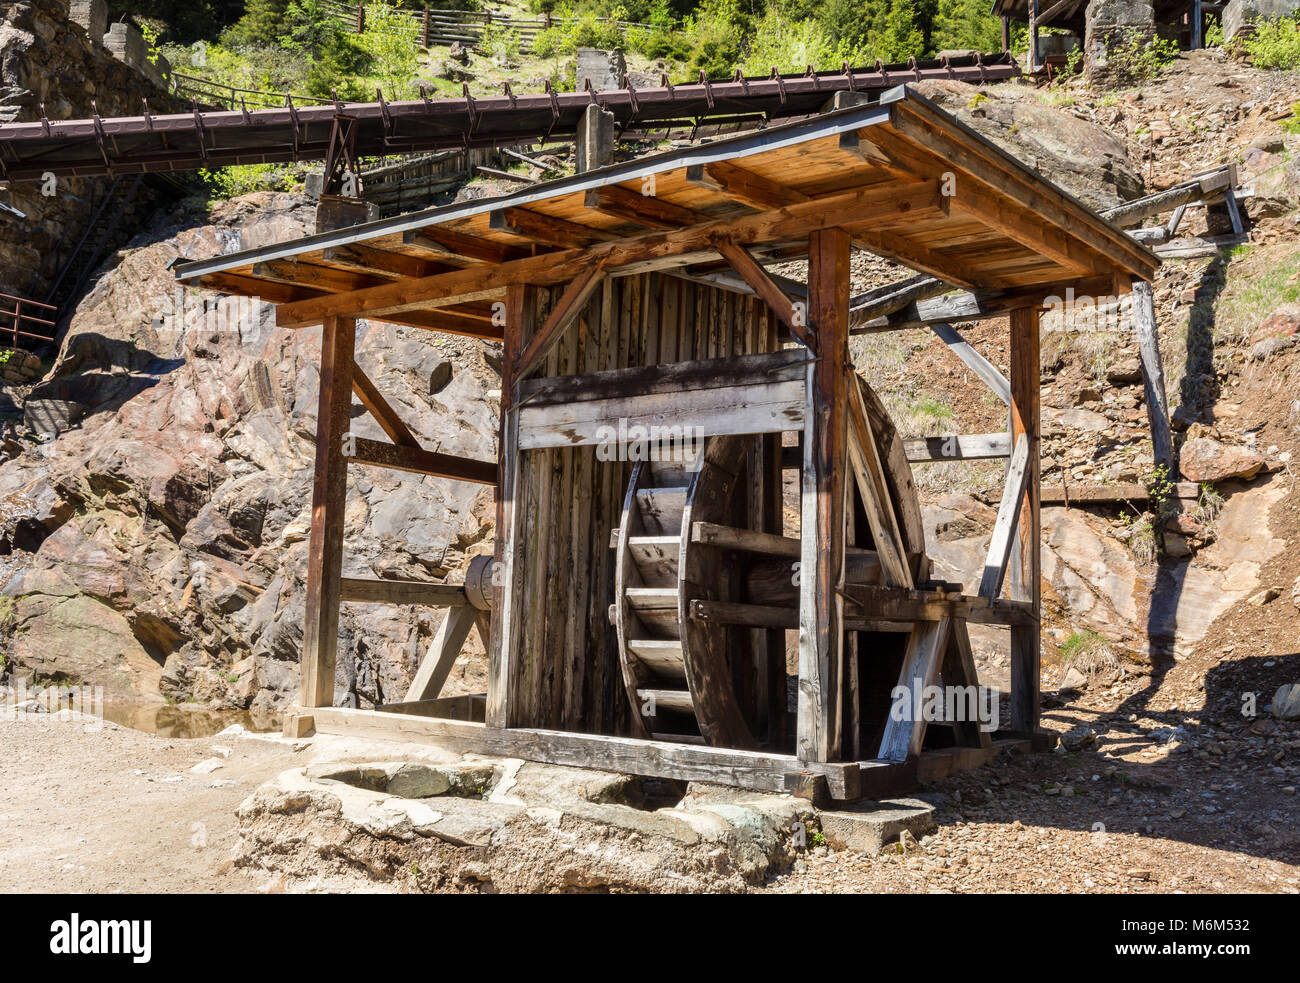 Il Mulino delle miniere Monteneve. Il mondo minerario Ridanna Monteneve è parte del Museo Minerario dell'Alto Adige, che illustra 800 anni di storia mineraria Foto Stock